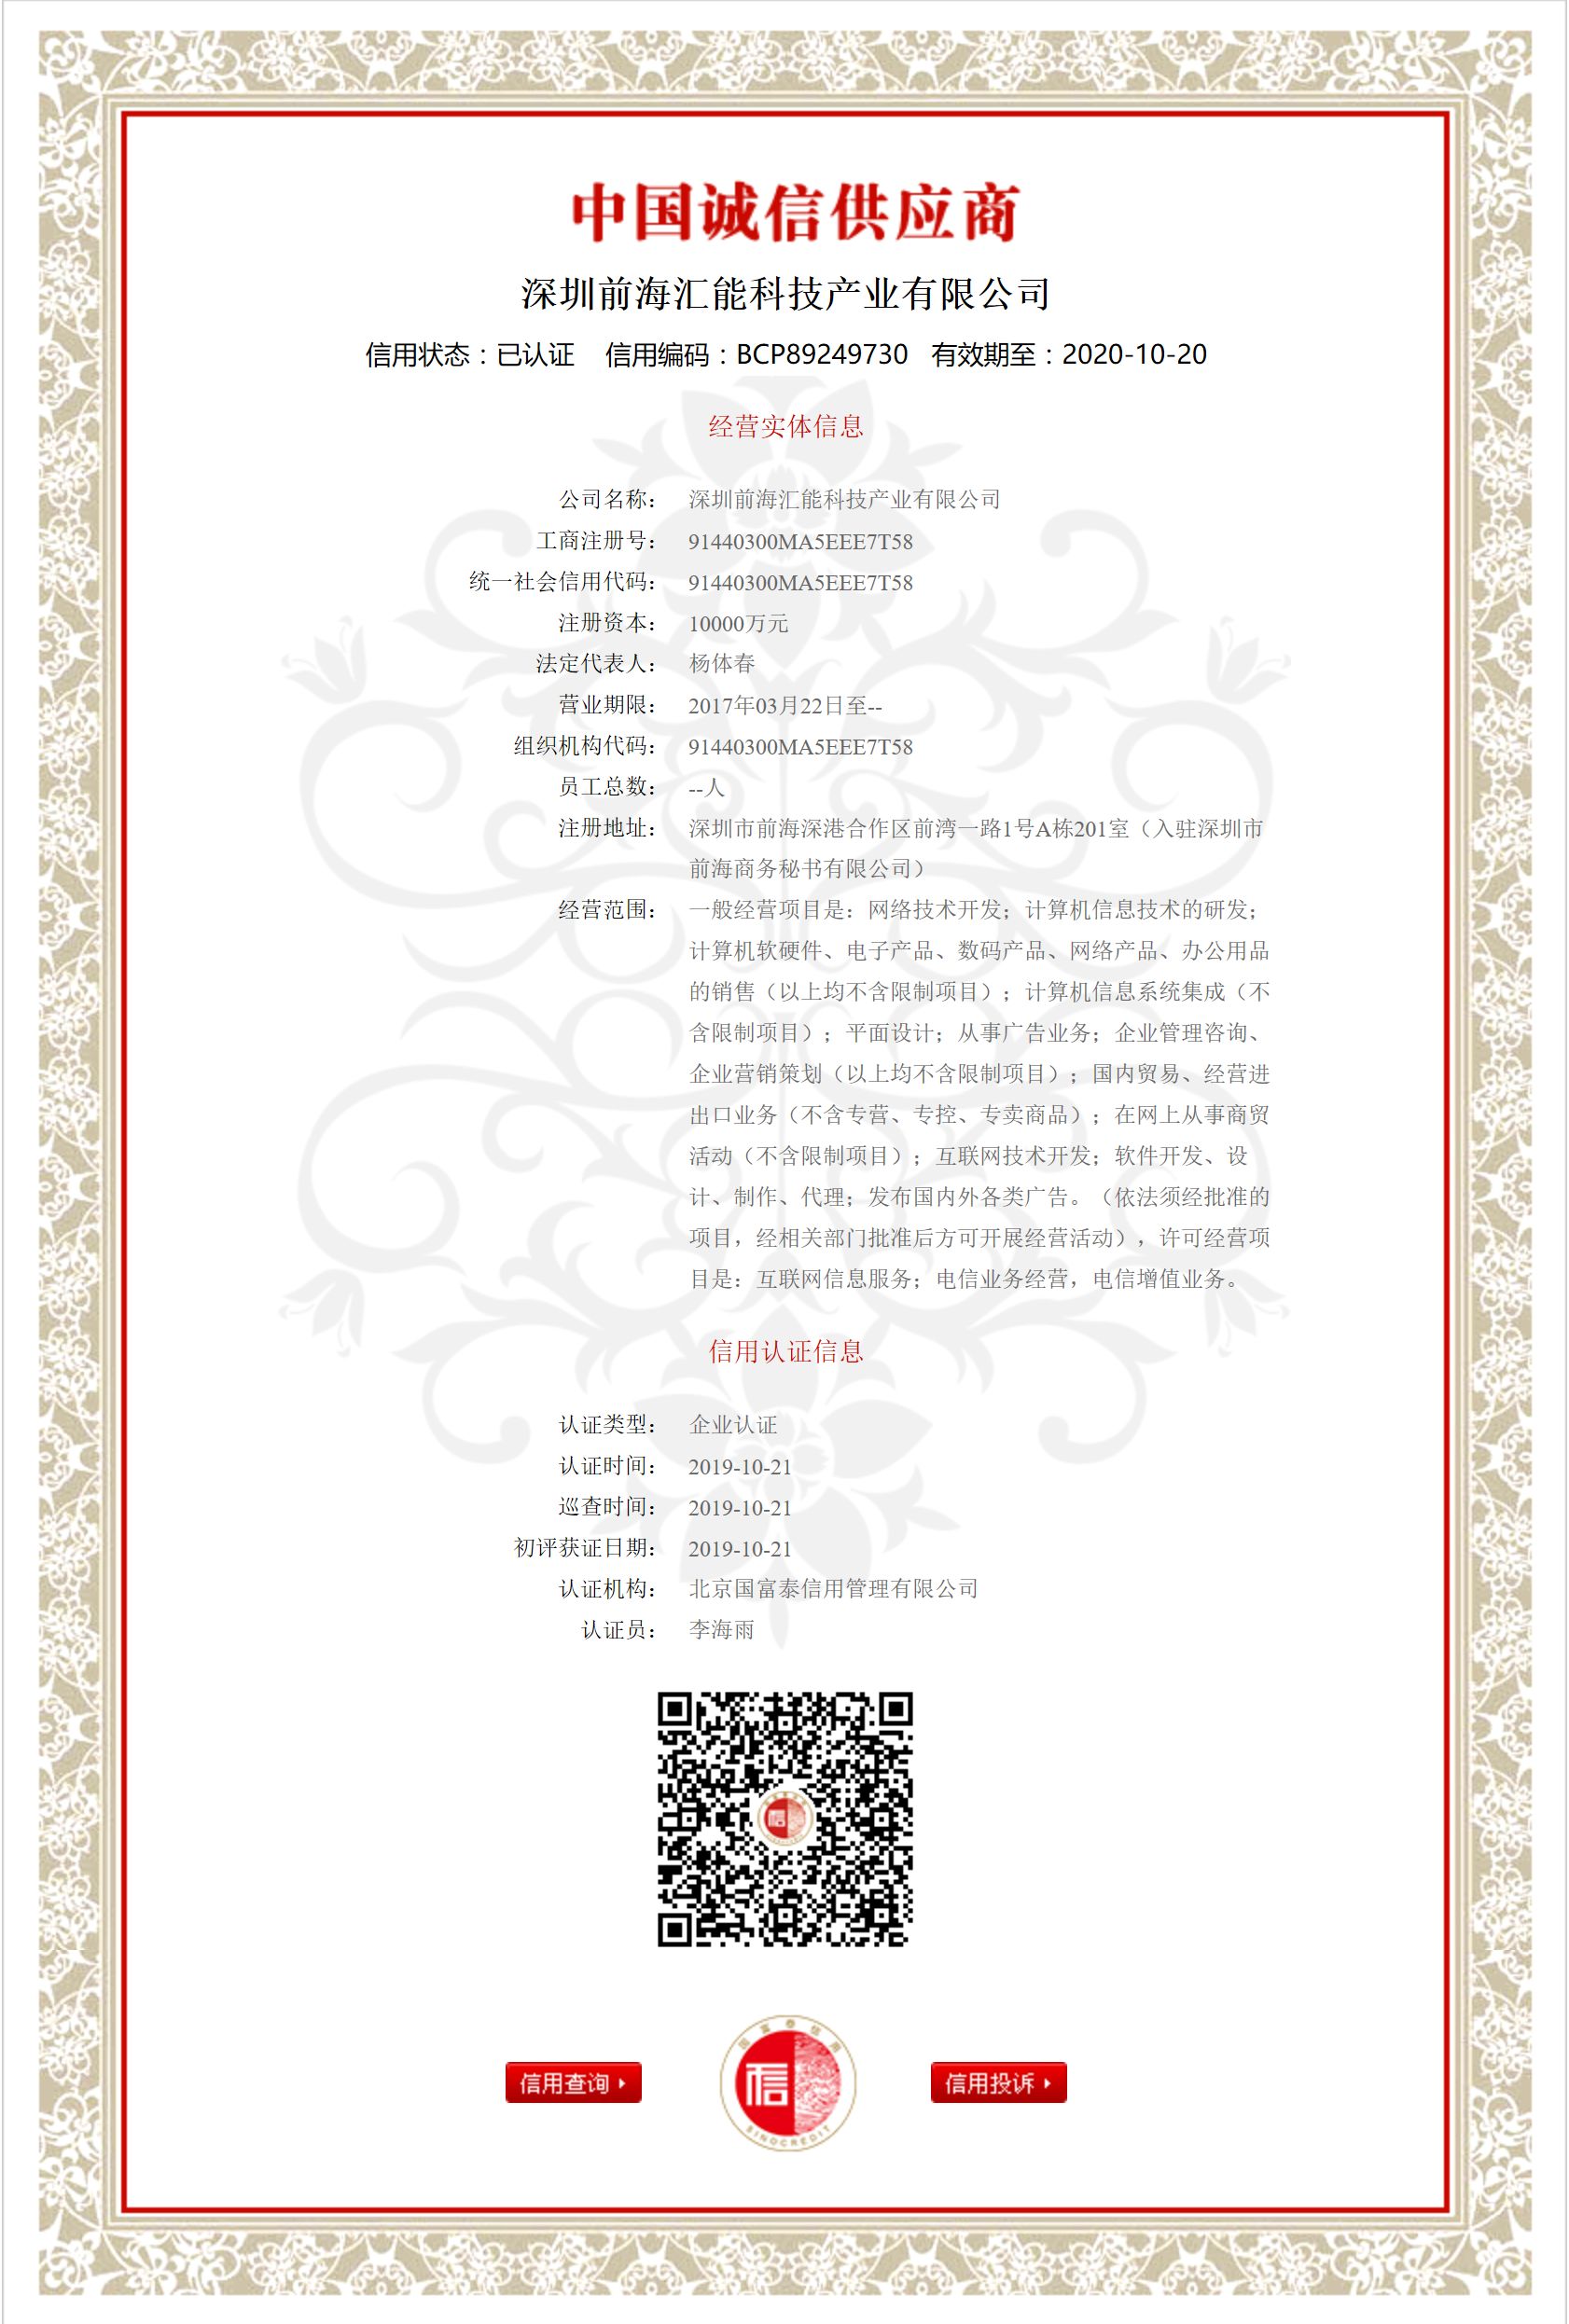 中国诚信供应商证书